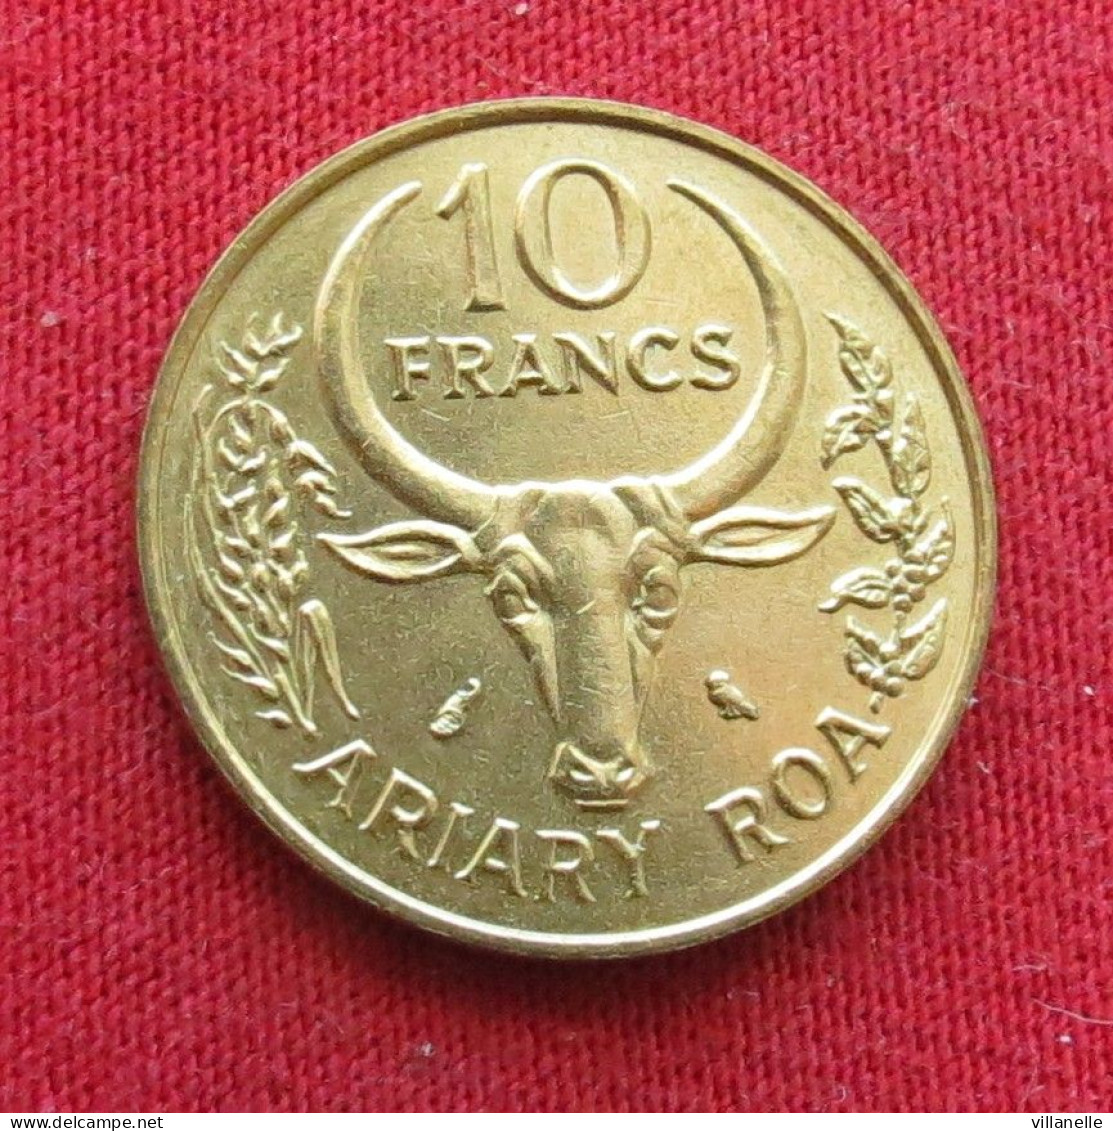 Madagascar 10 Francs 1970 Fao F.A.O. UNC ºº - Madagascar